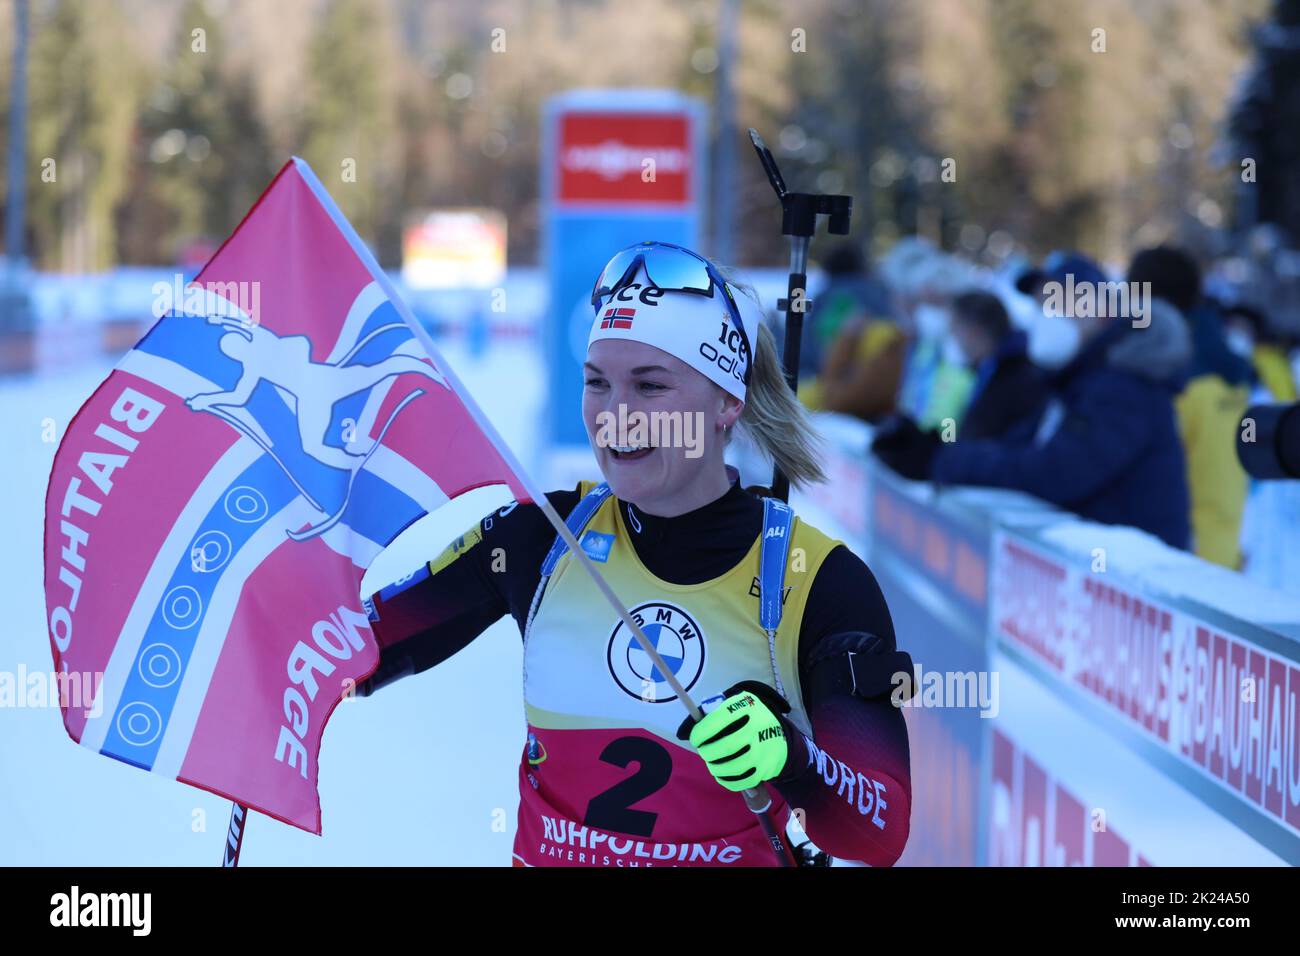 Mit der norwegischen Flagge in der Hand bejubelt Marte Olsbu Roeiseland (Norwegen / Norway) ihren Sieg beim  beim IBU Biathlon Weltcup Pursuit 10 km F Stock Photo